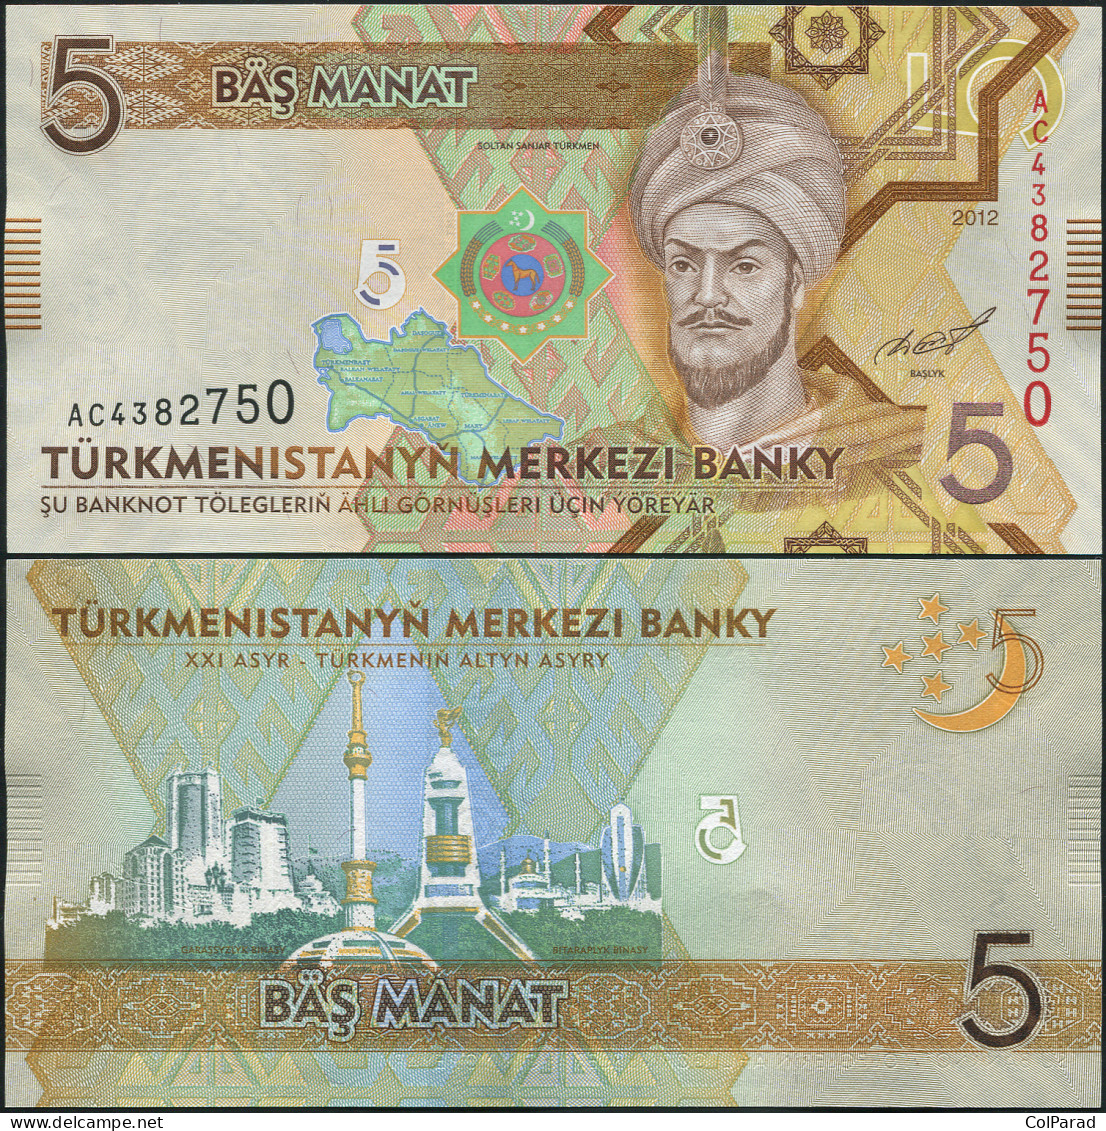 TURKMENISTAN 5 MANAT - 2012 - Paper Unc - P.30a Banknote - Turkmenistan